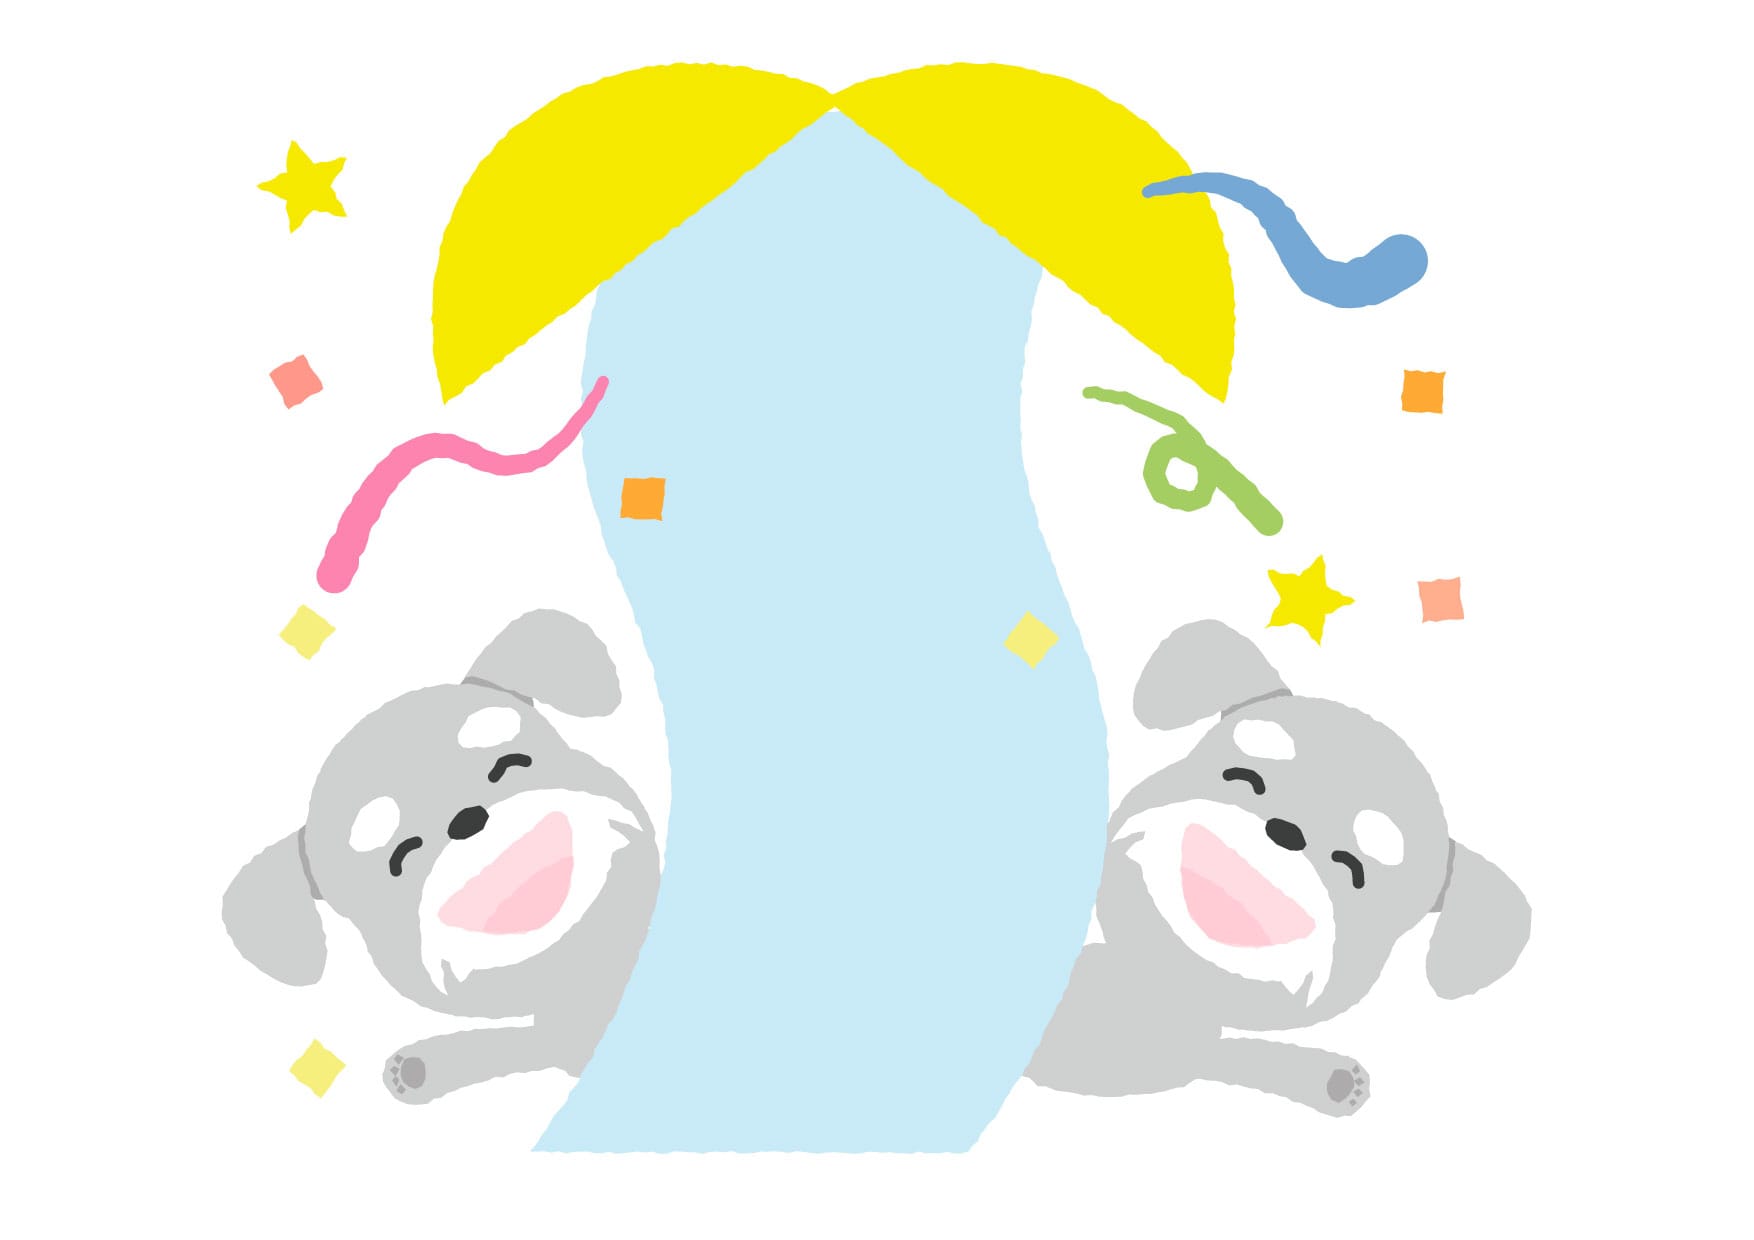 可愛いイラスト無料 犬 くす玉 Free Illustration Dog Kusudama 公式 イラスト素材サイト イラストダウンロード